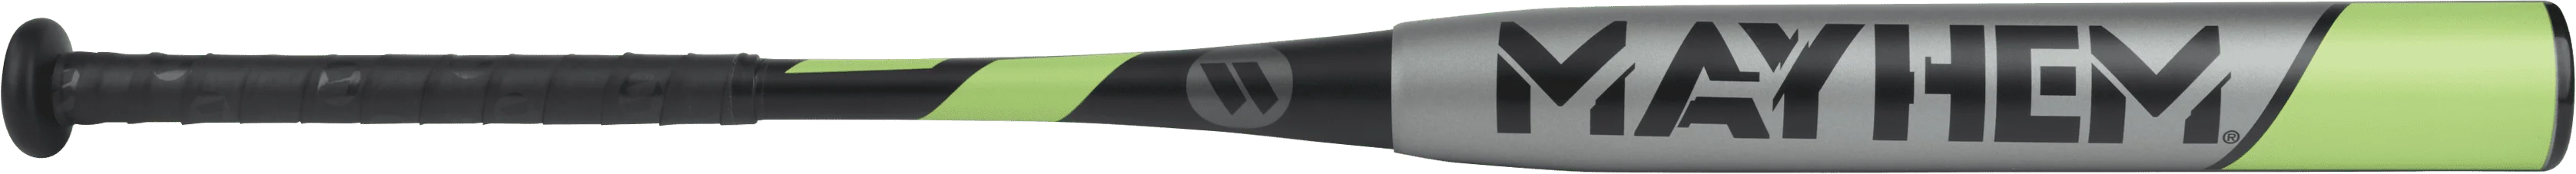 

Mayhem Slowpitch Softball Bat, 34 inch